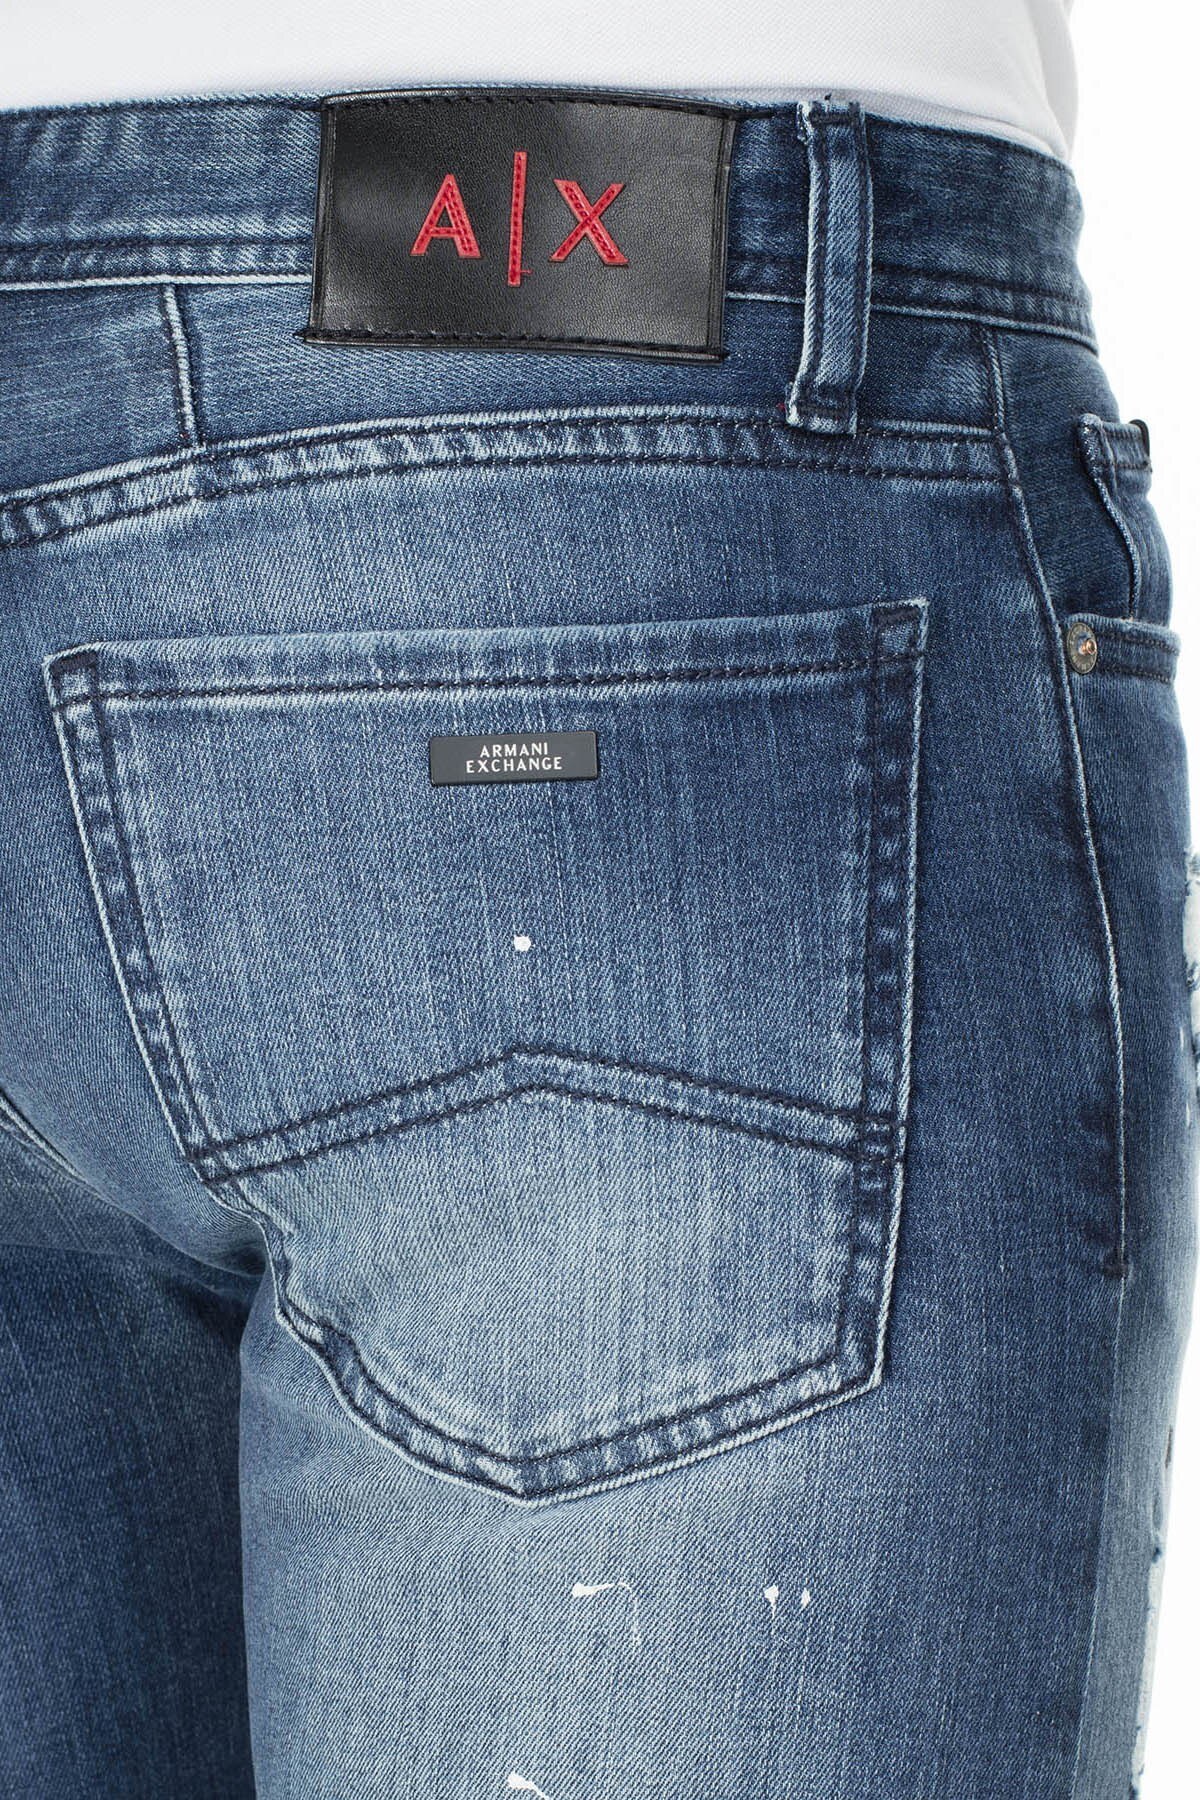 Armani Exchange J14 Jeans Erkek Kot Pantolon 3HZJ14 Z4ZCZ 1500 KOYU MAVİ